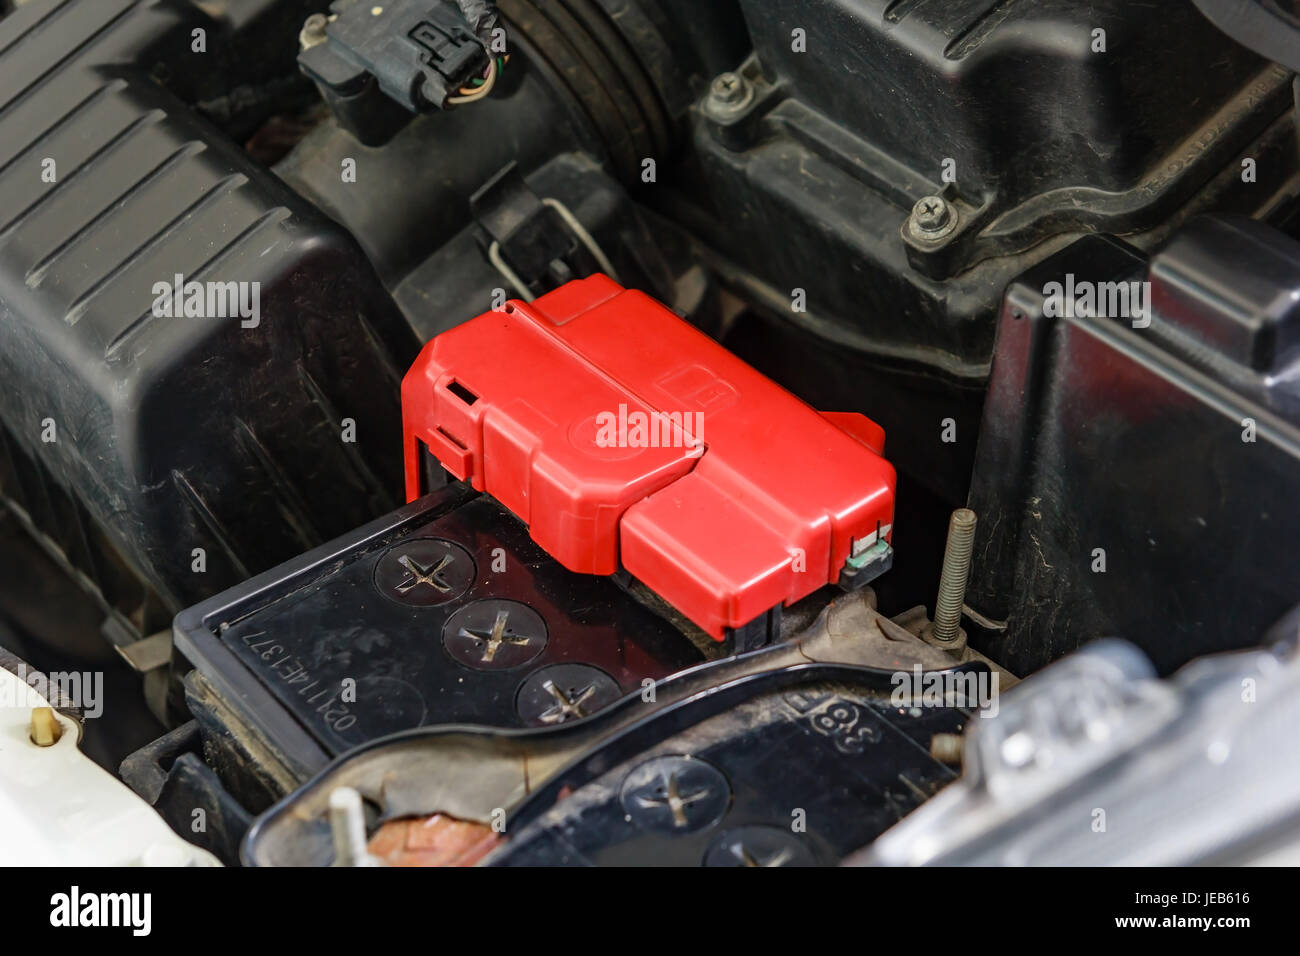 La borne de batterie de voiture avec polarité positive rouge Photo Stock -  Alamy